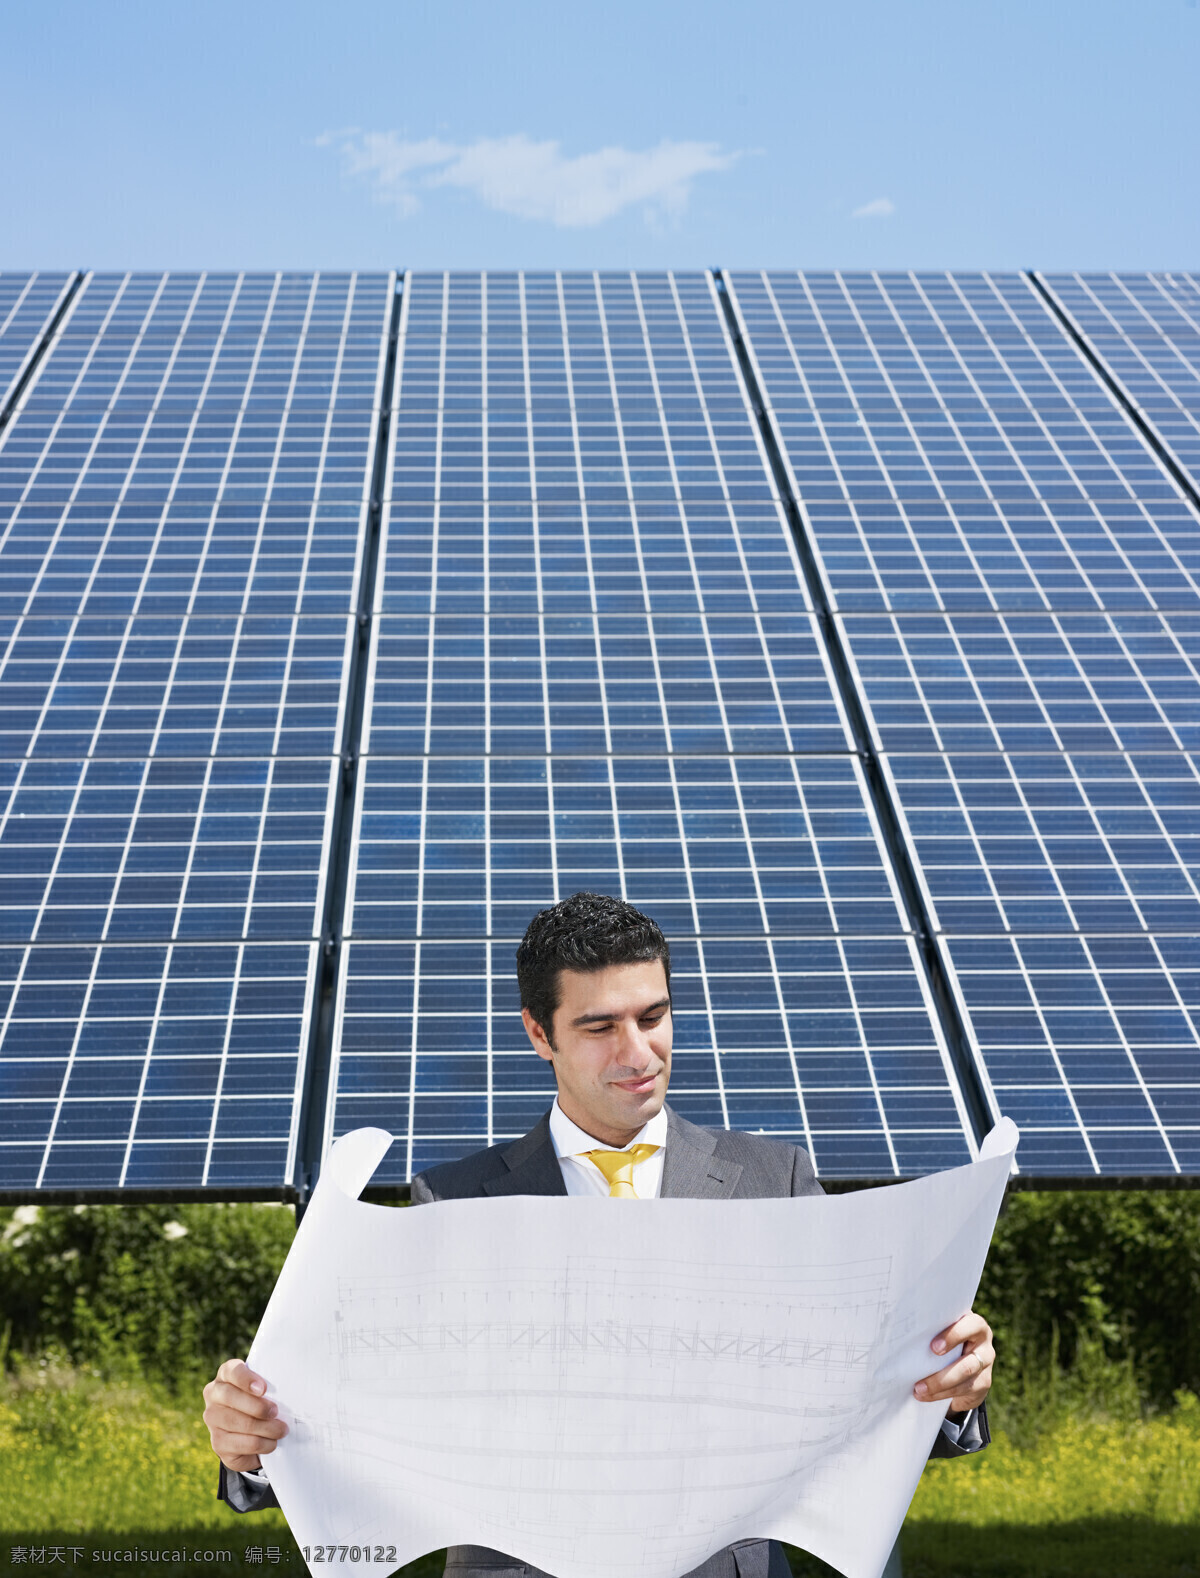 工程师 太阳能 太阳能发电站 环保节能 生态环保 绿色环保 商务男士 其他类别 生活百科 蓝色